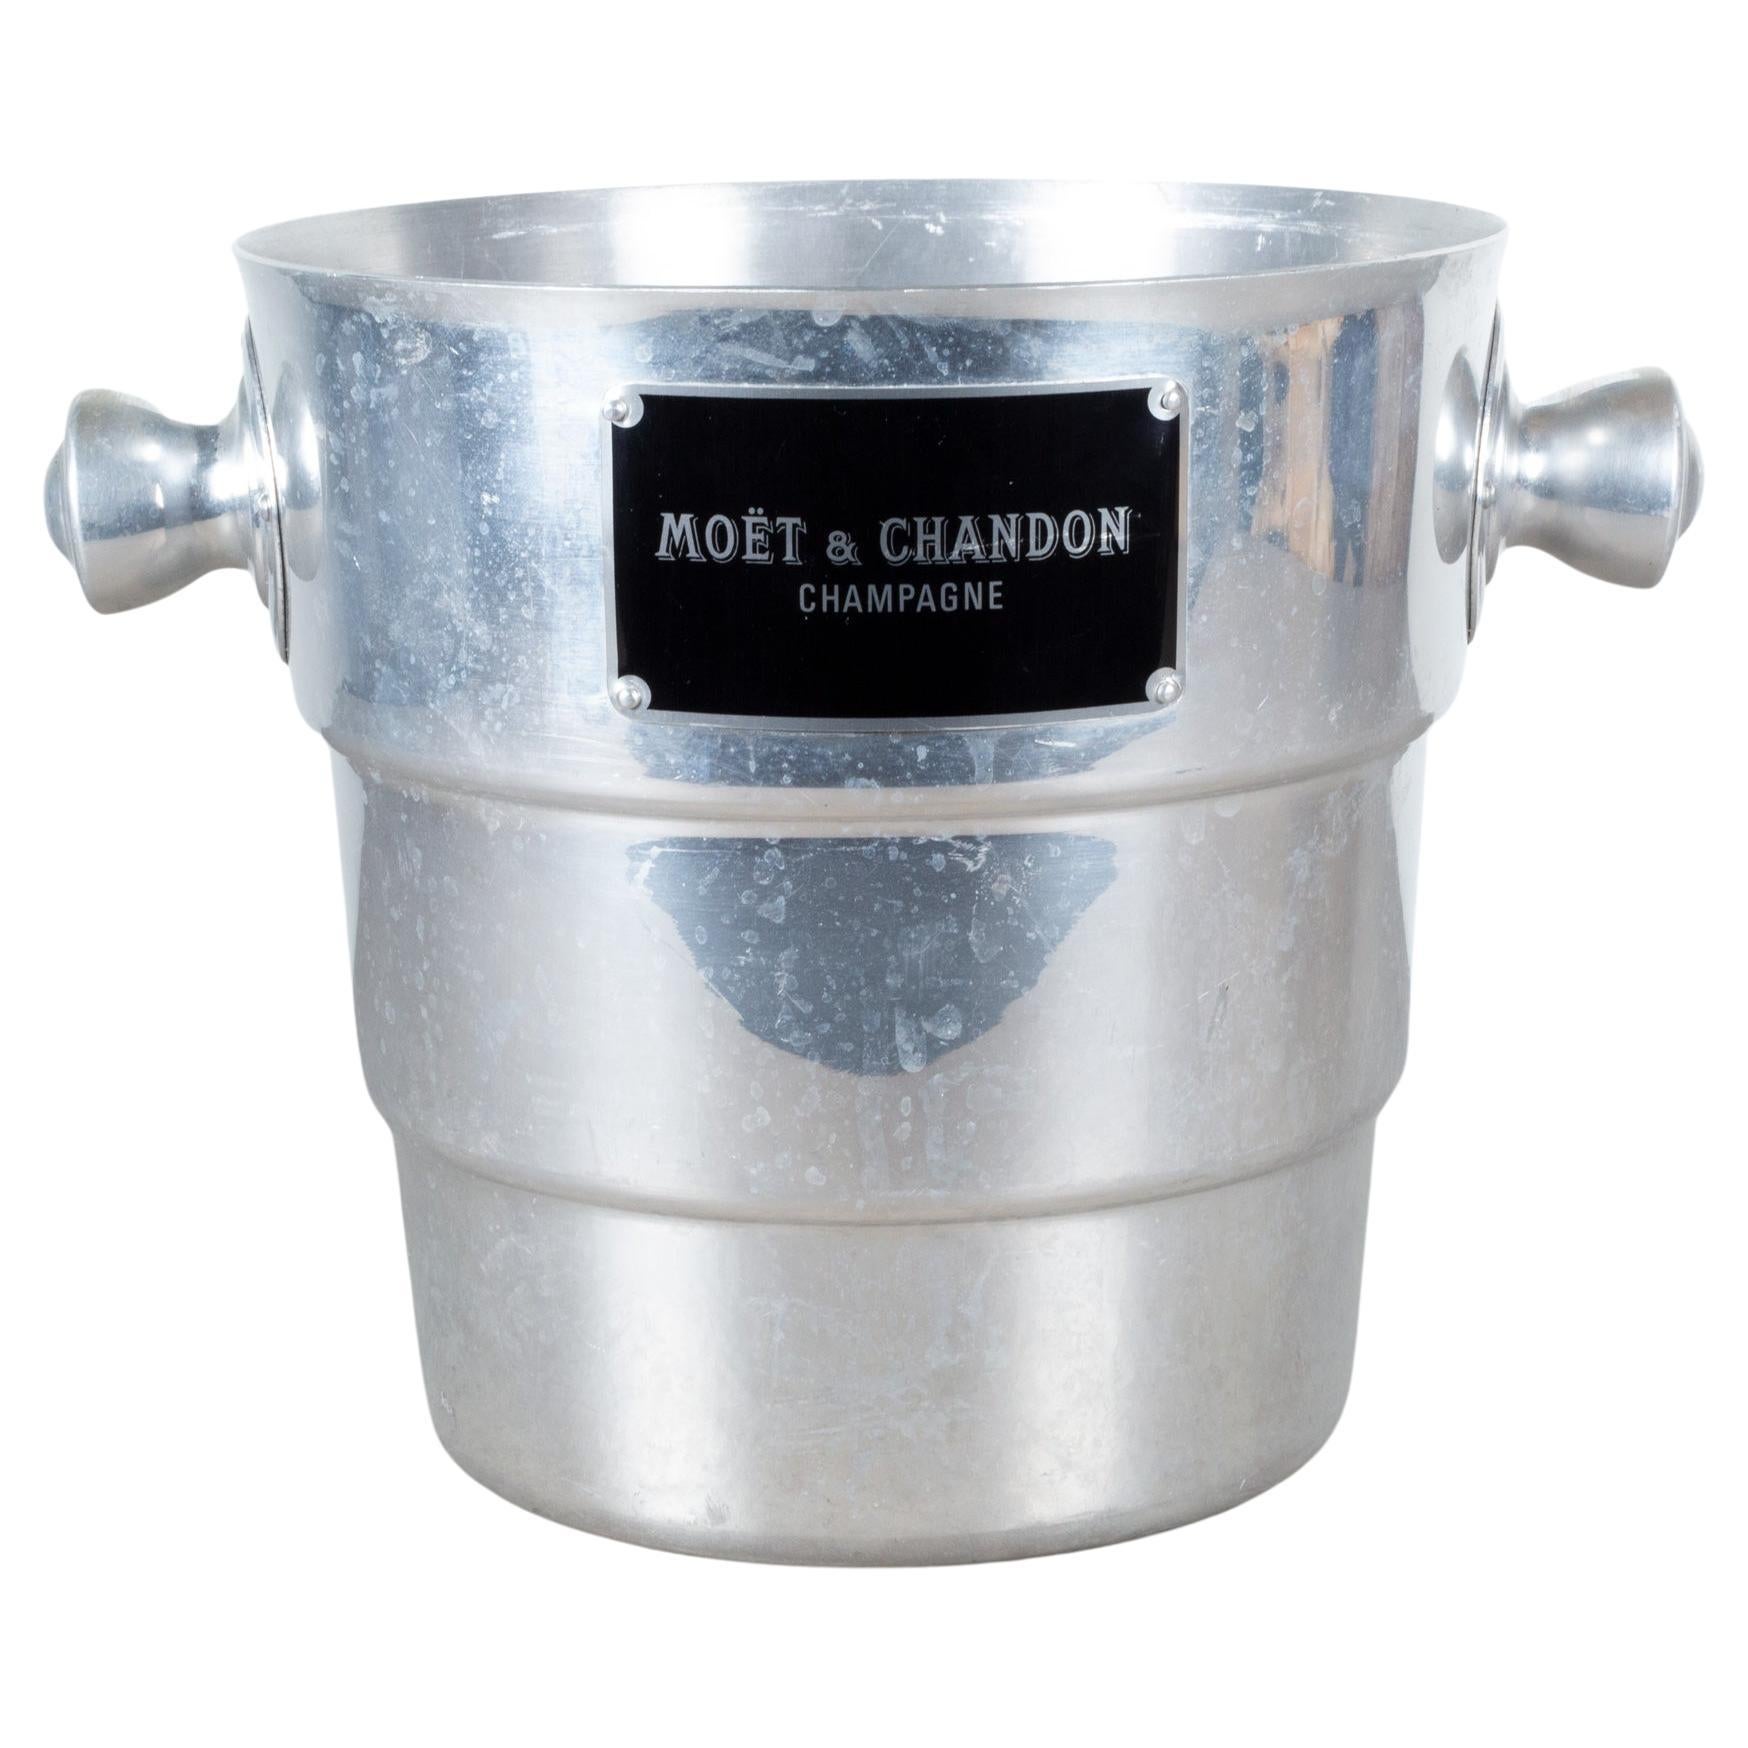 Seau à glace champagne Moet & Chandon vintage vers 1940 (expédition gratuite)